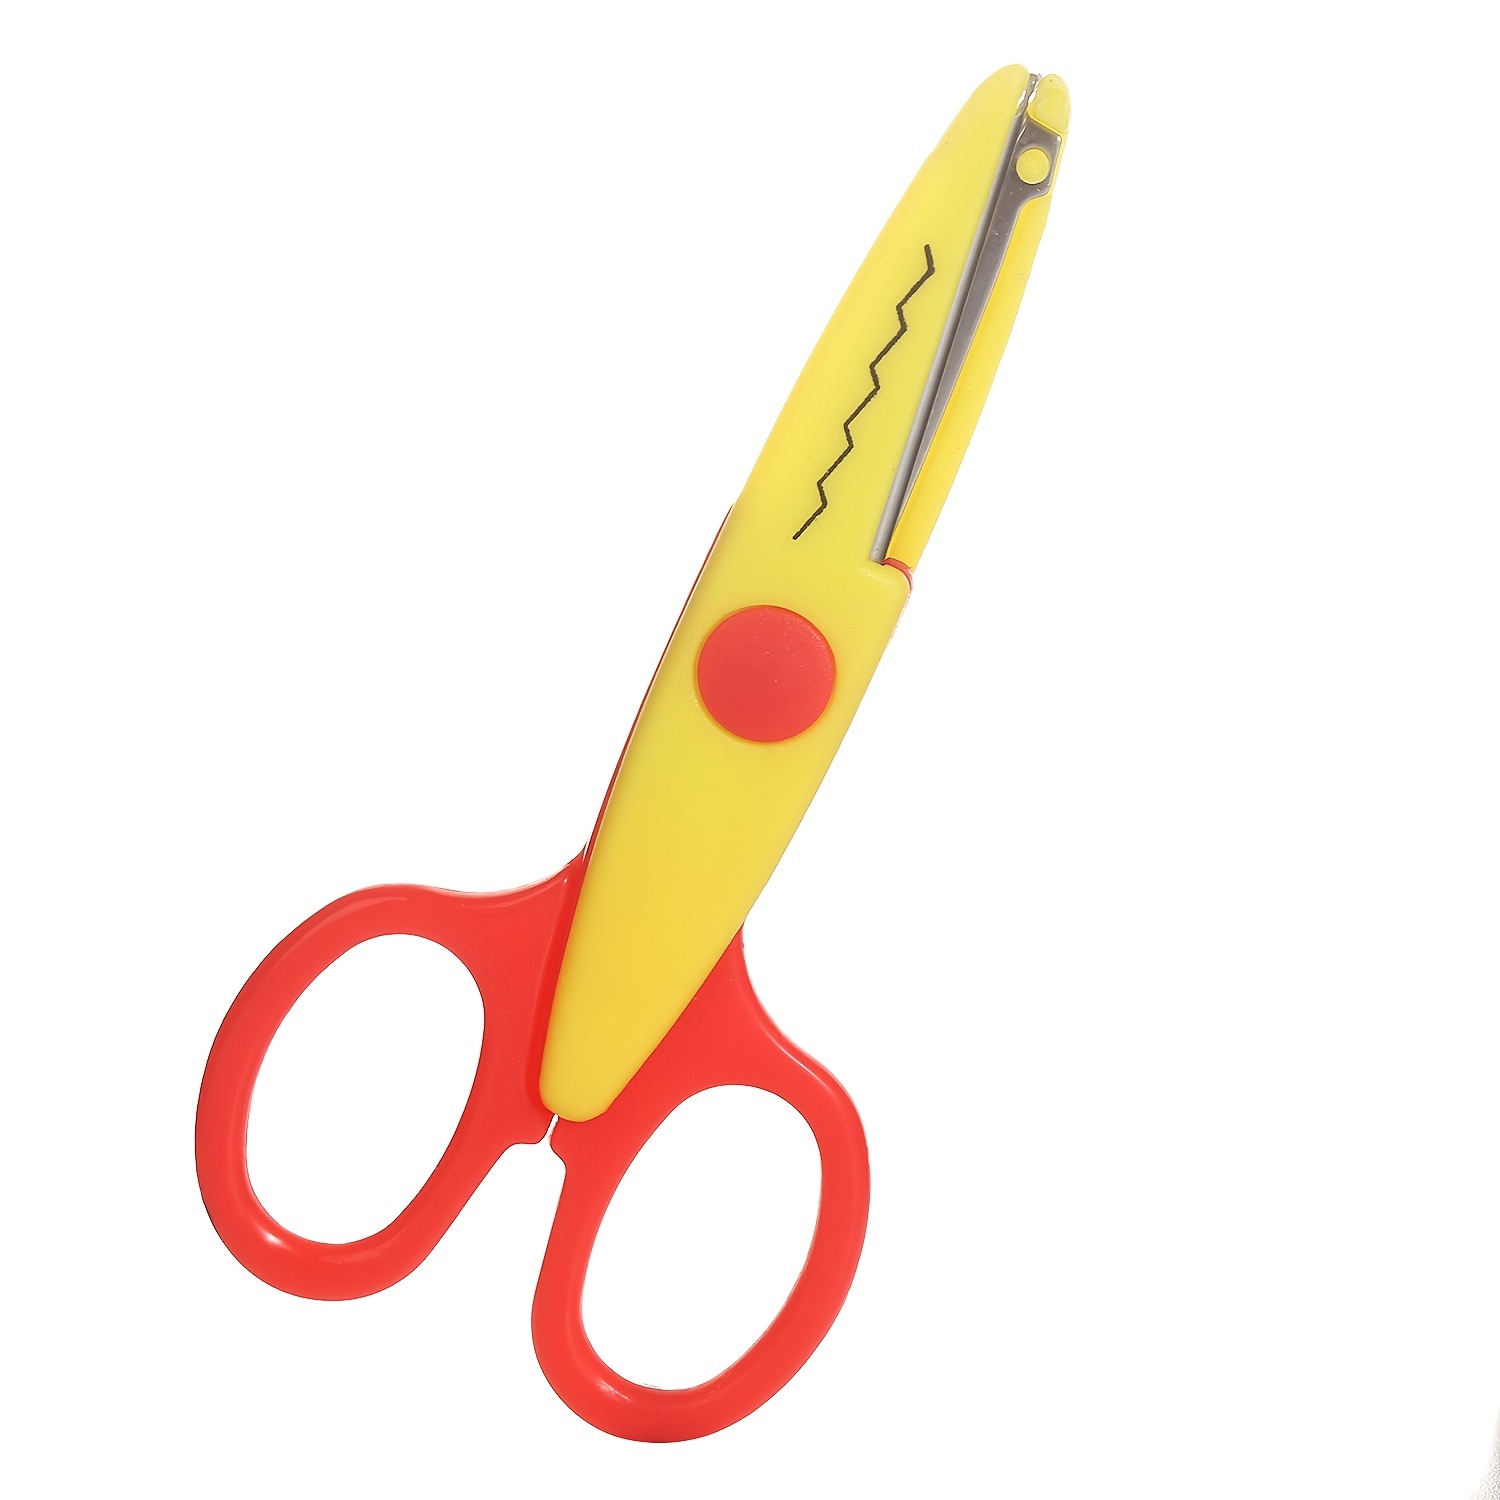 6pcs/set Decorative Paper Edge Scissors Set With Portable